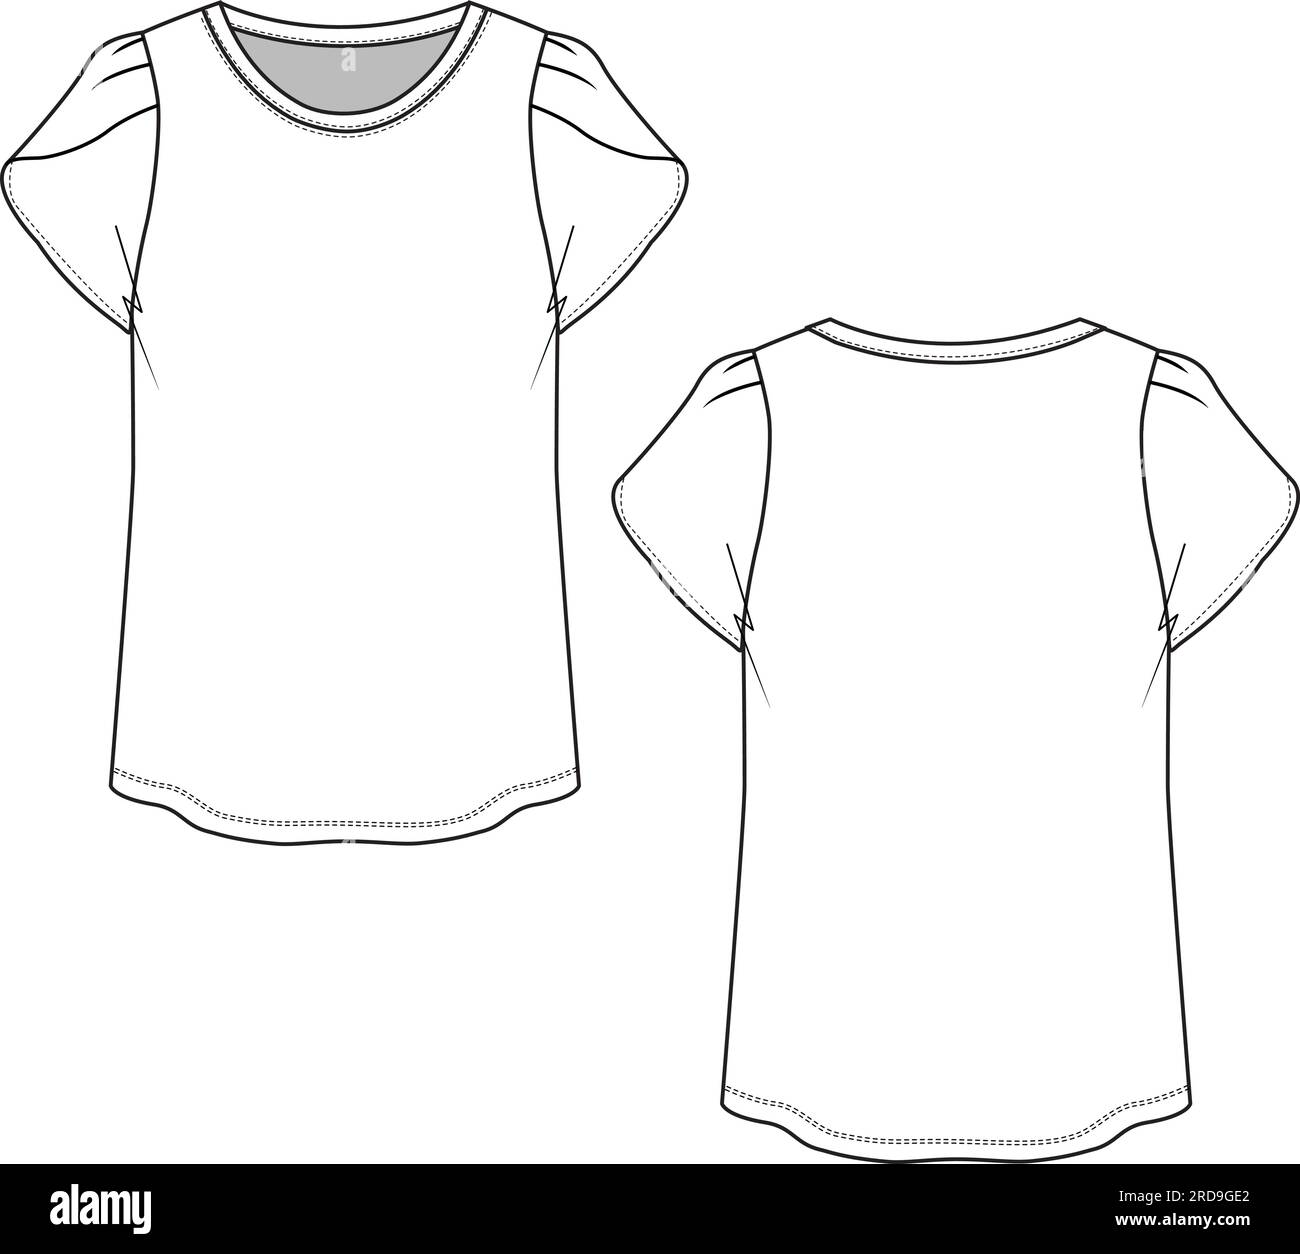 Damen Rundhalsausschnitt Bluse mit Blütenärmeln T-Shirt technische flache Zeichnung Vektor Stock Vektor